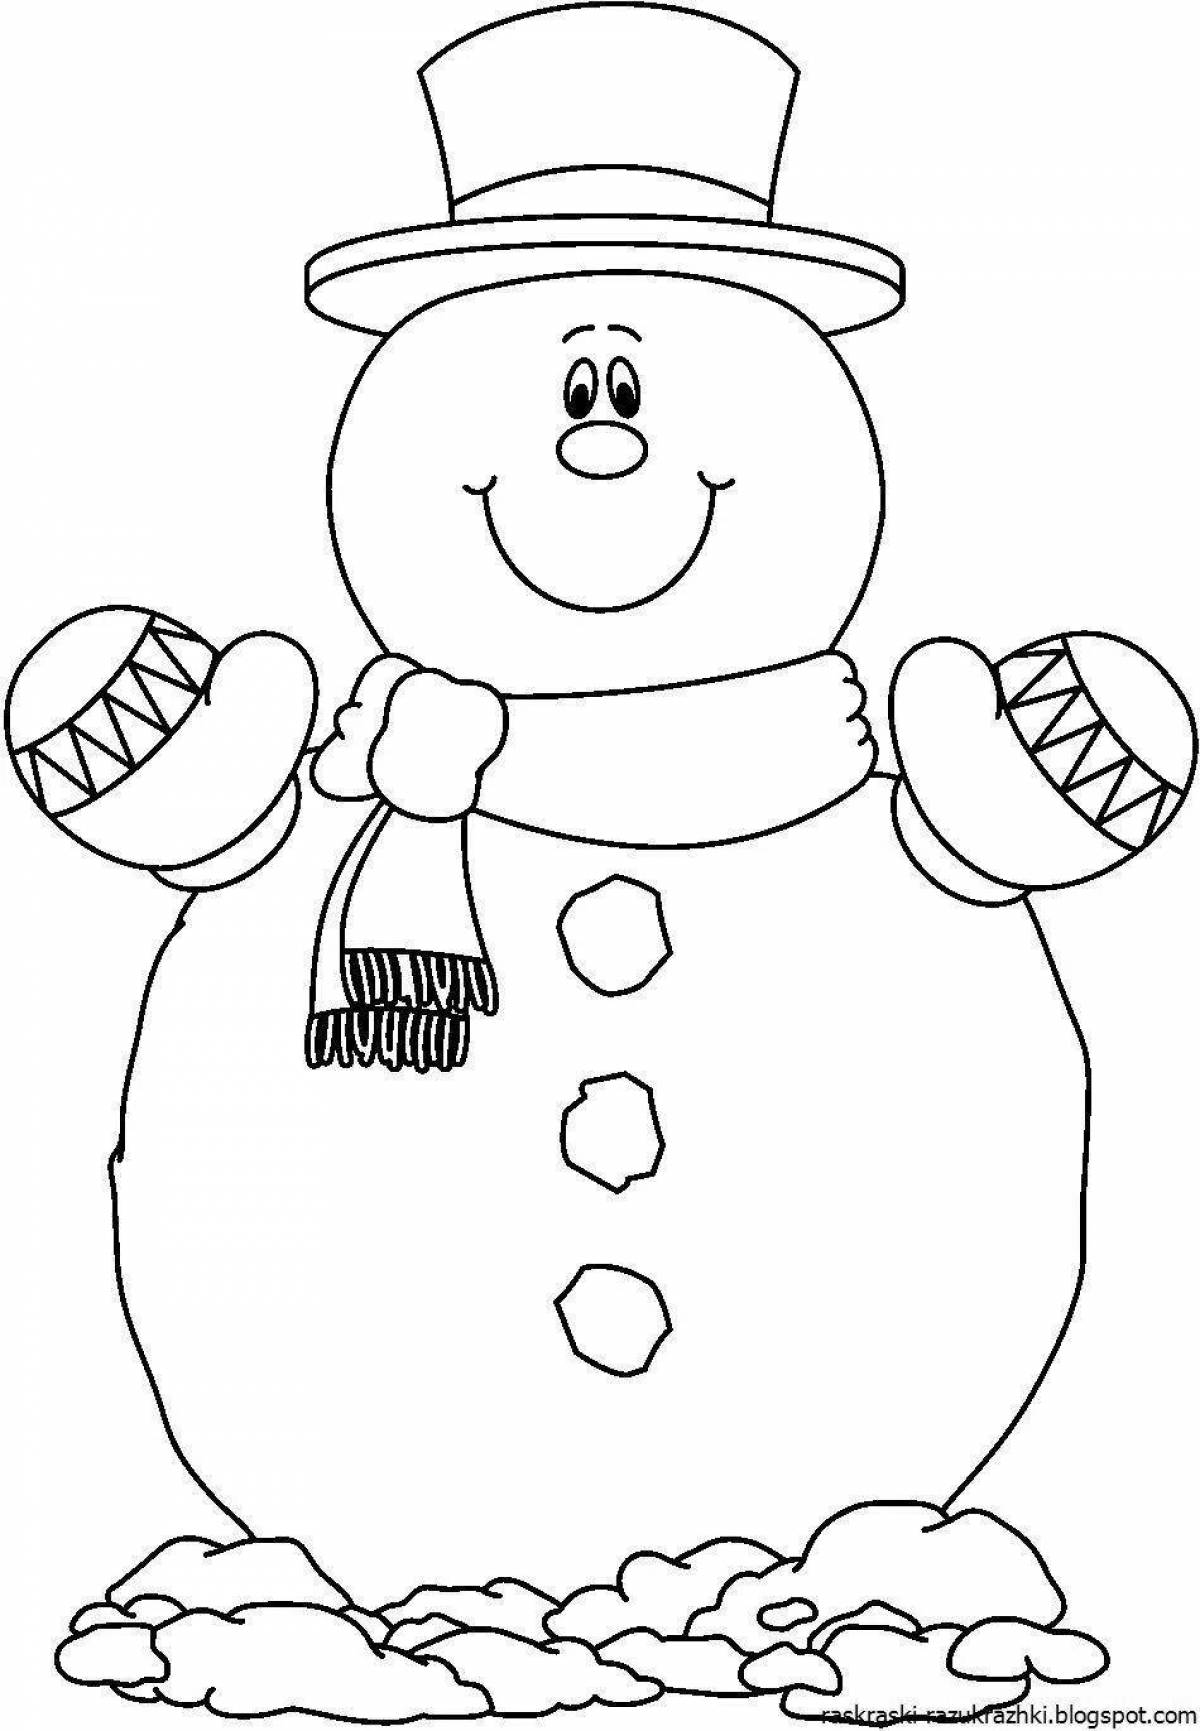 Сверкающая раскраска снеговик для детей 3-4 лет